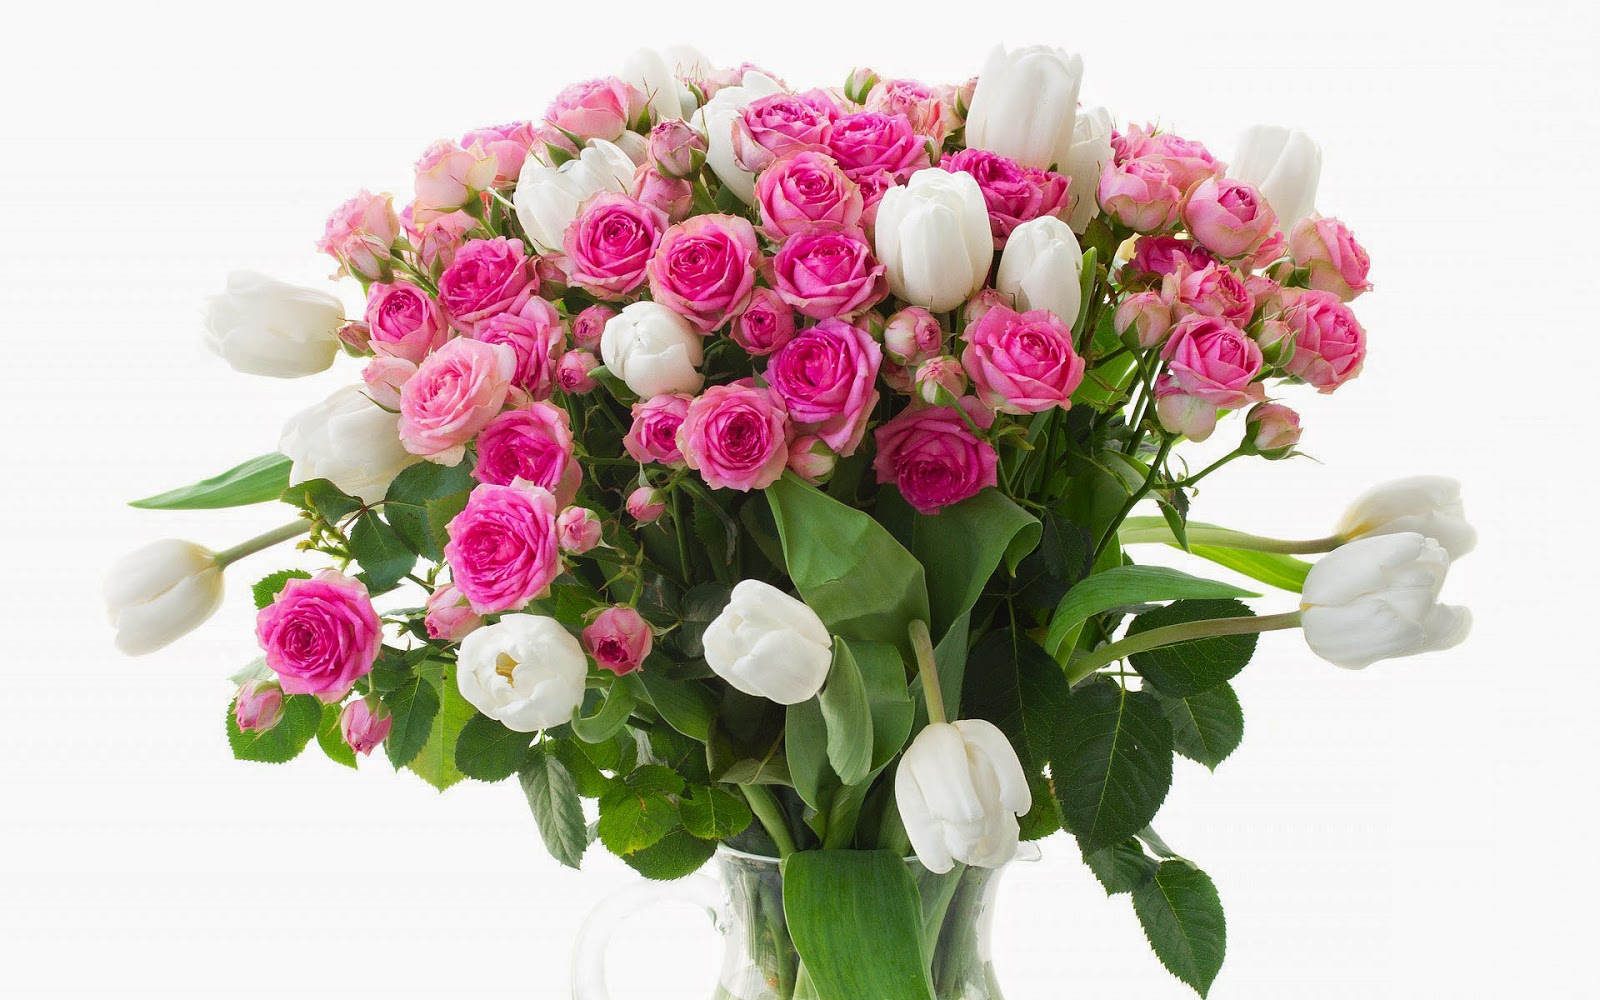 Witte tulpen en roze rozen in een glazen vaas